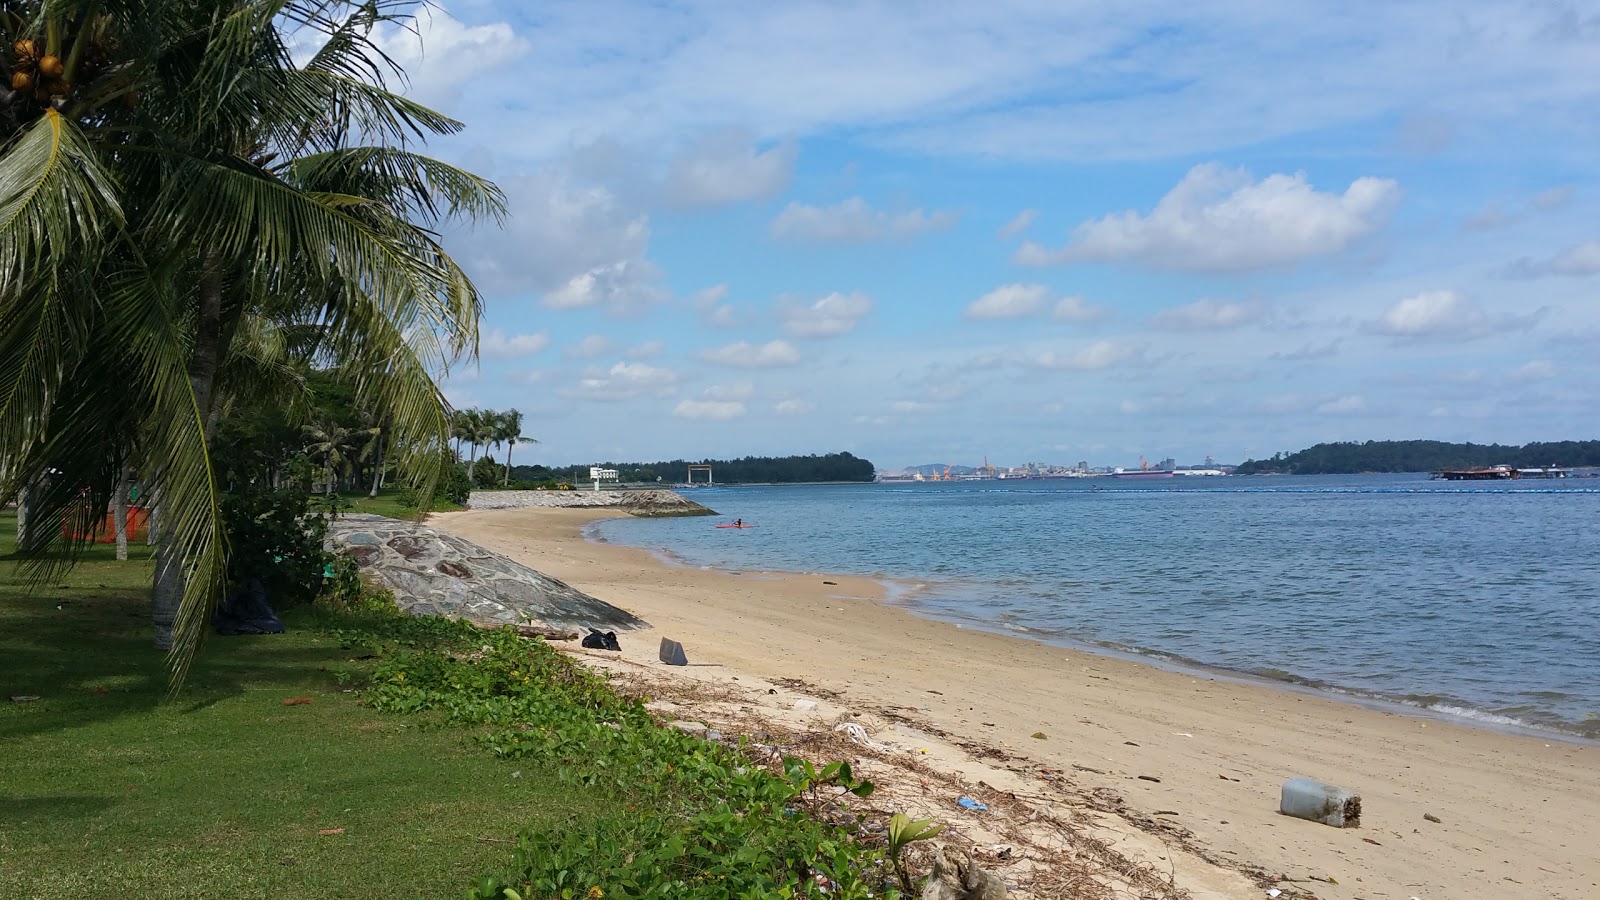 Pasir Ris Beach'in fotoğrafı parlak kum yüzey ile